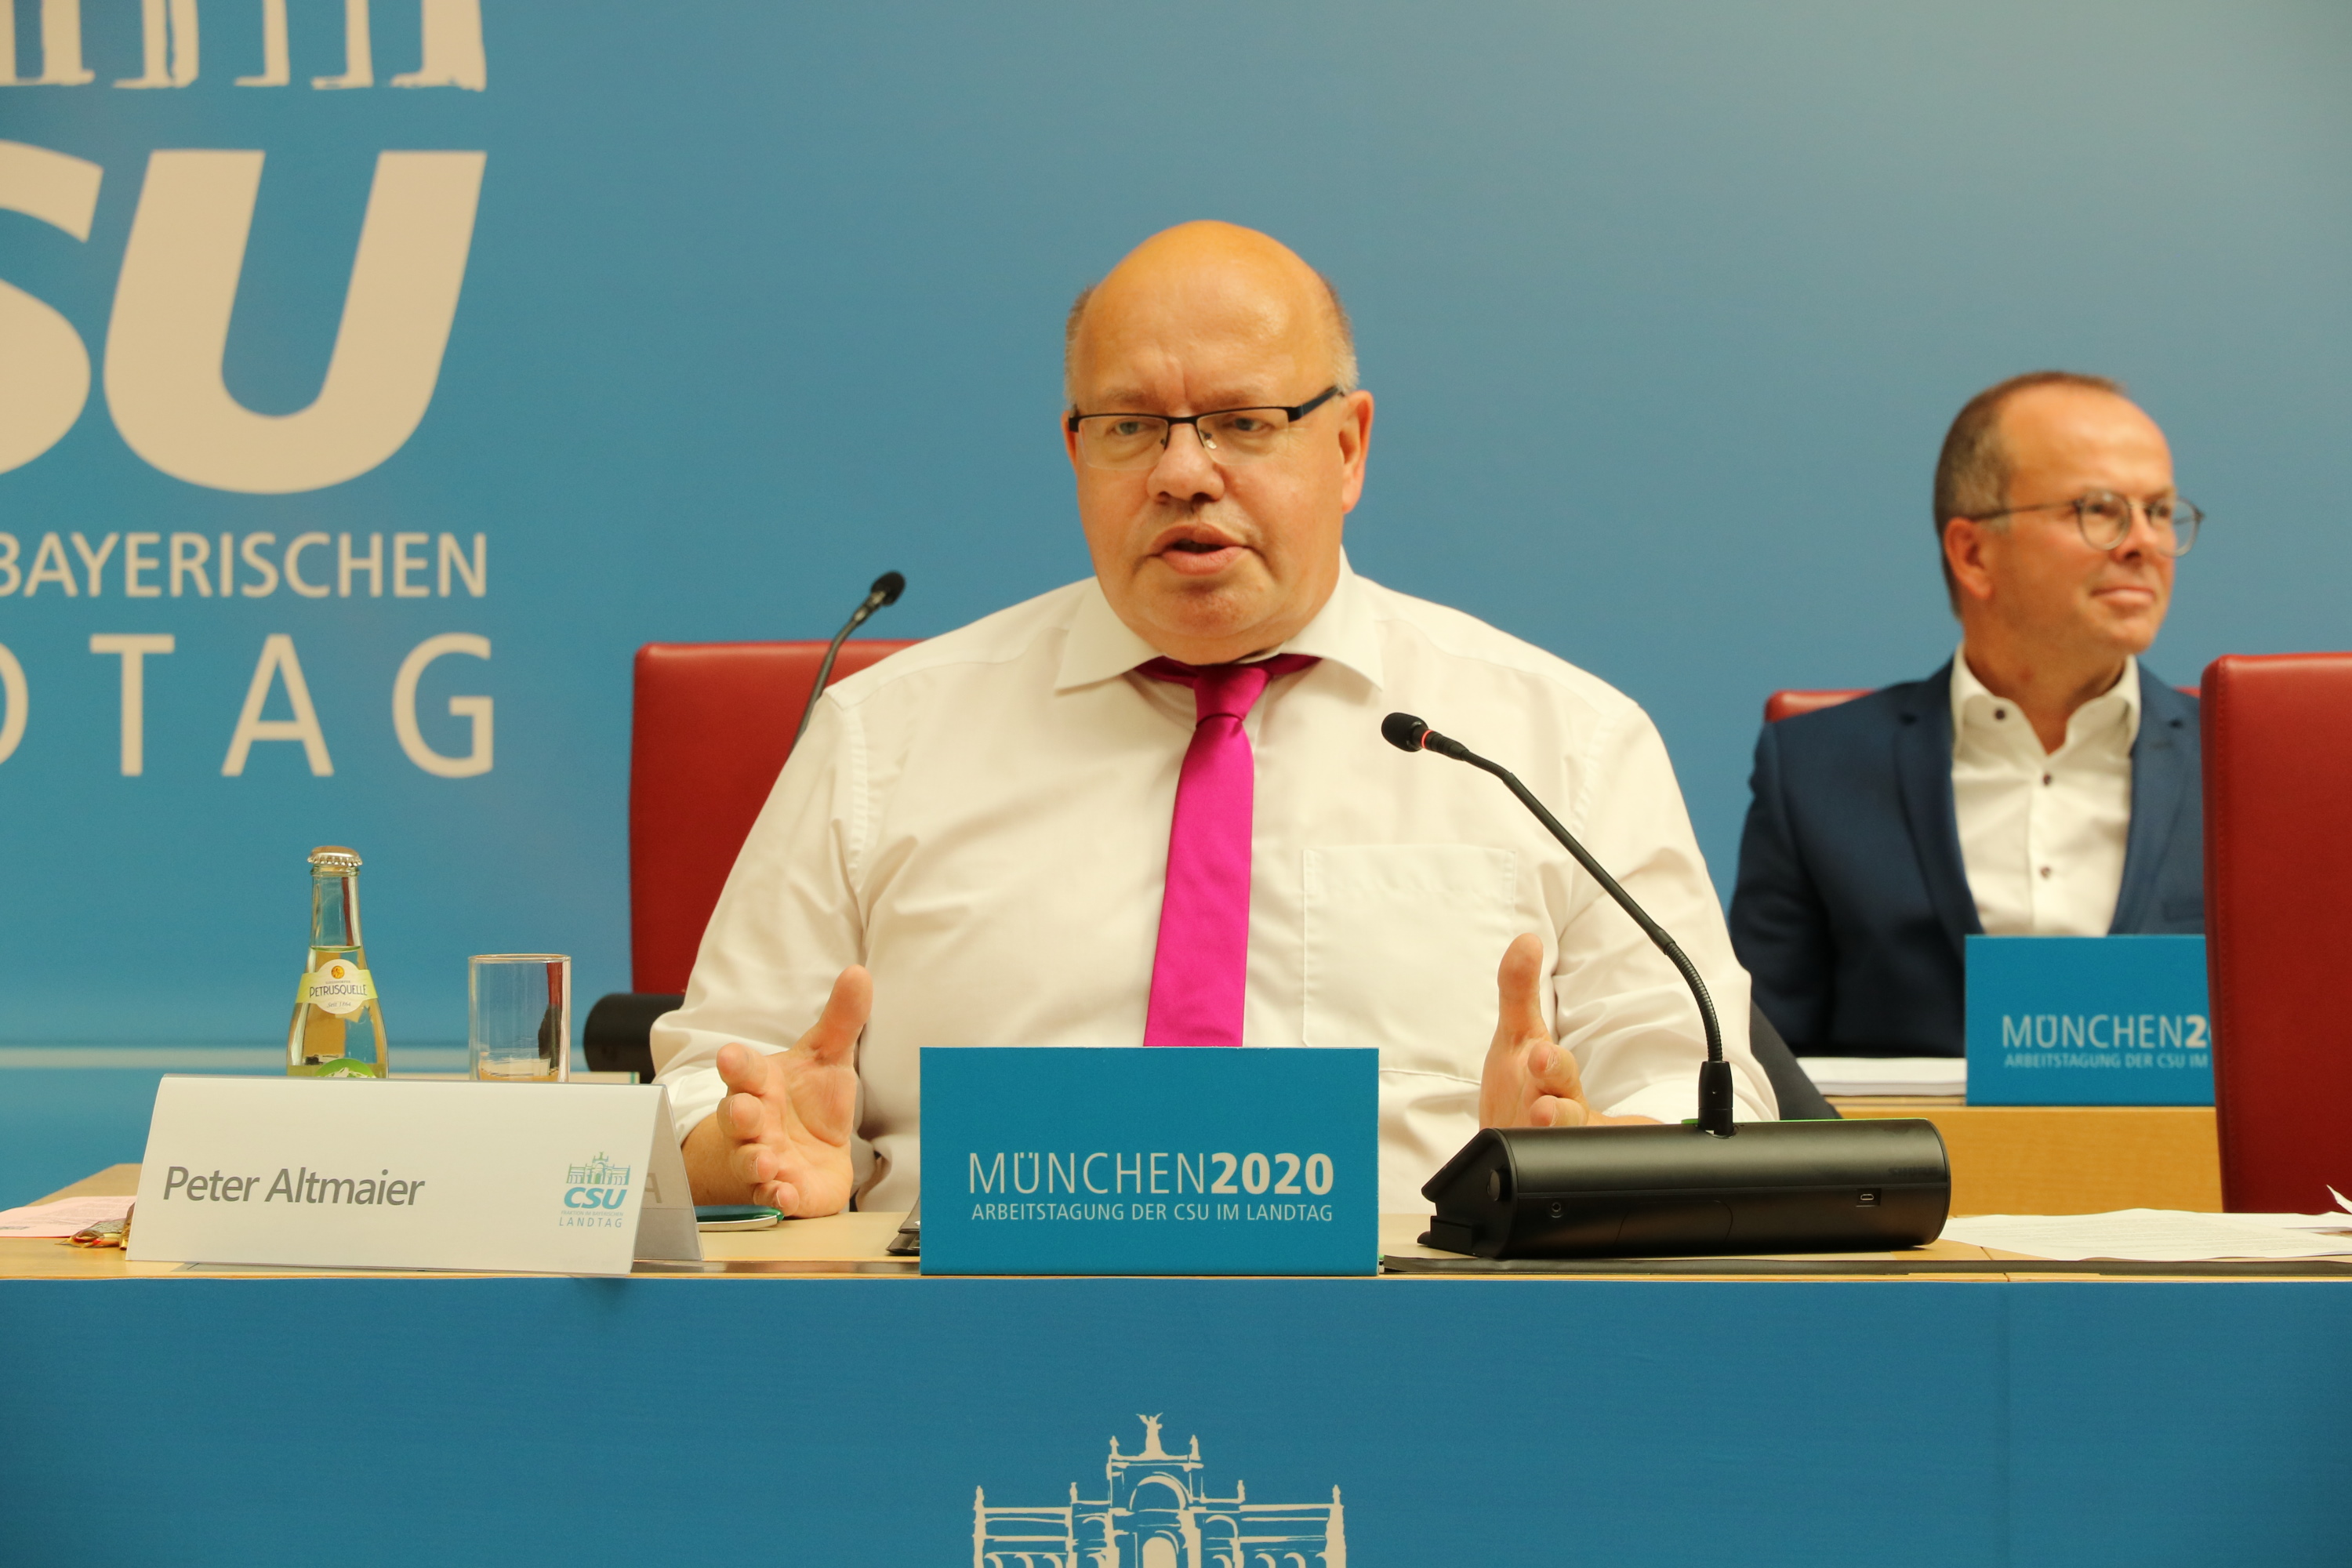 München2020: Bundeswirtschaftsminister Peter Altmaier berichtet über das geplante Konjunkturprogramm